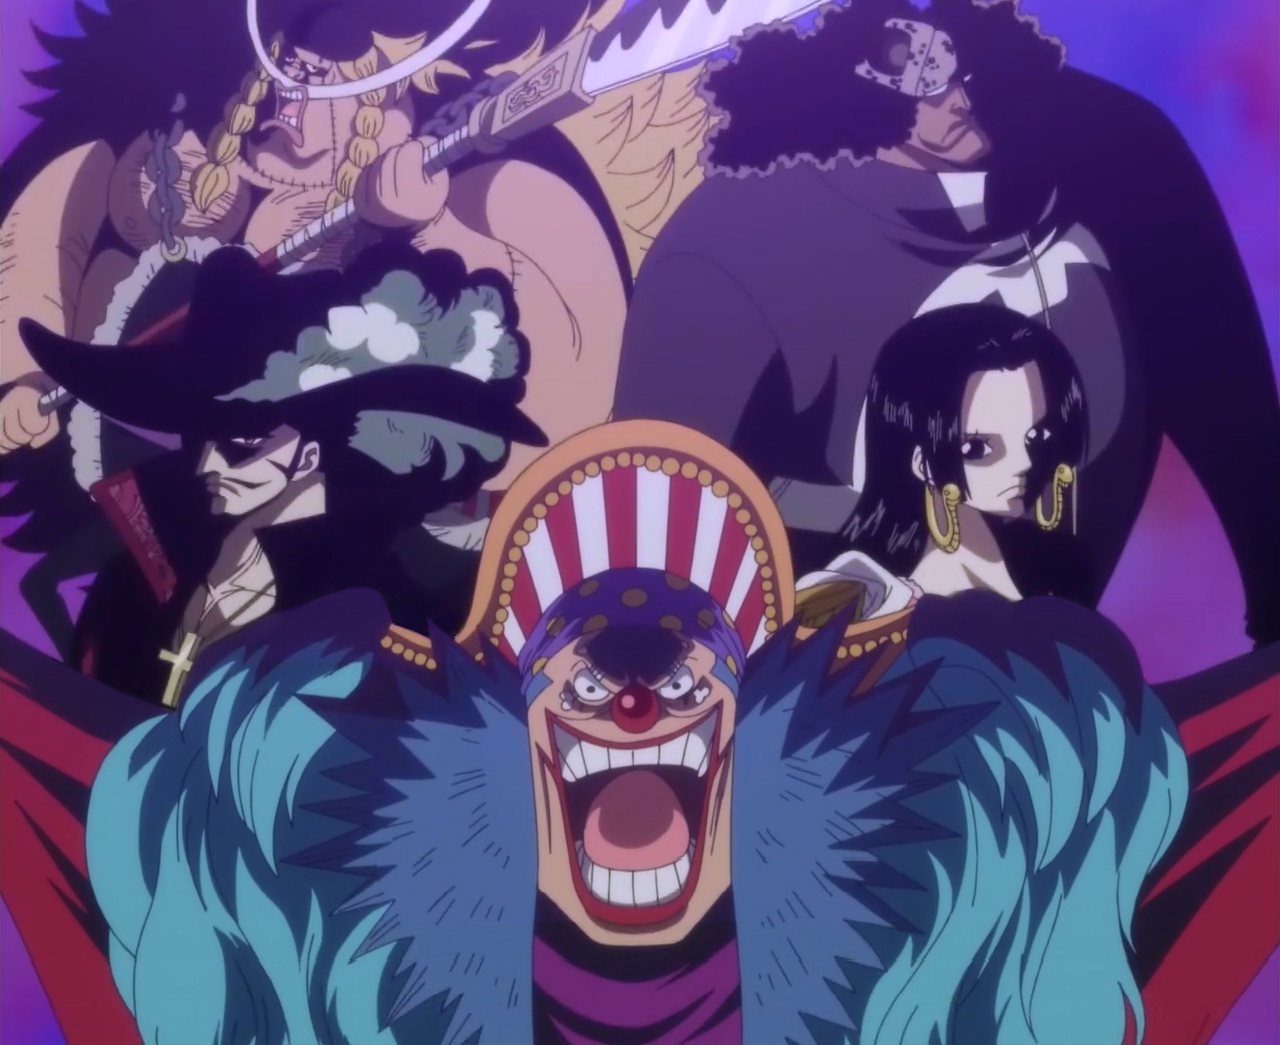 One Piece  Spoilers completos do mangá 1058 – Novo Imperador